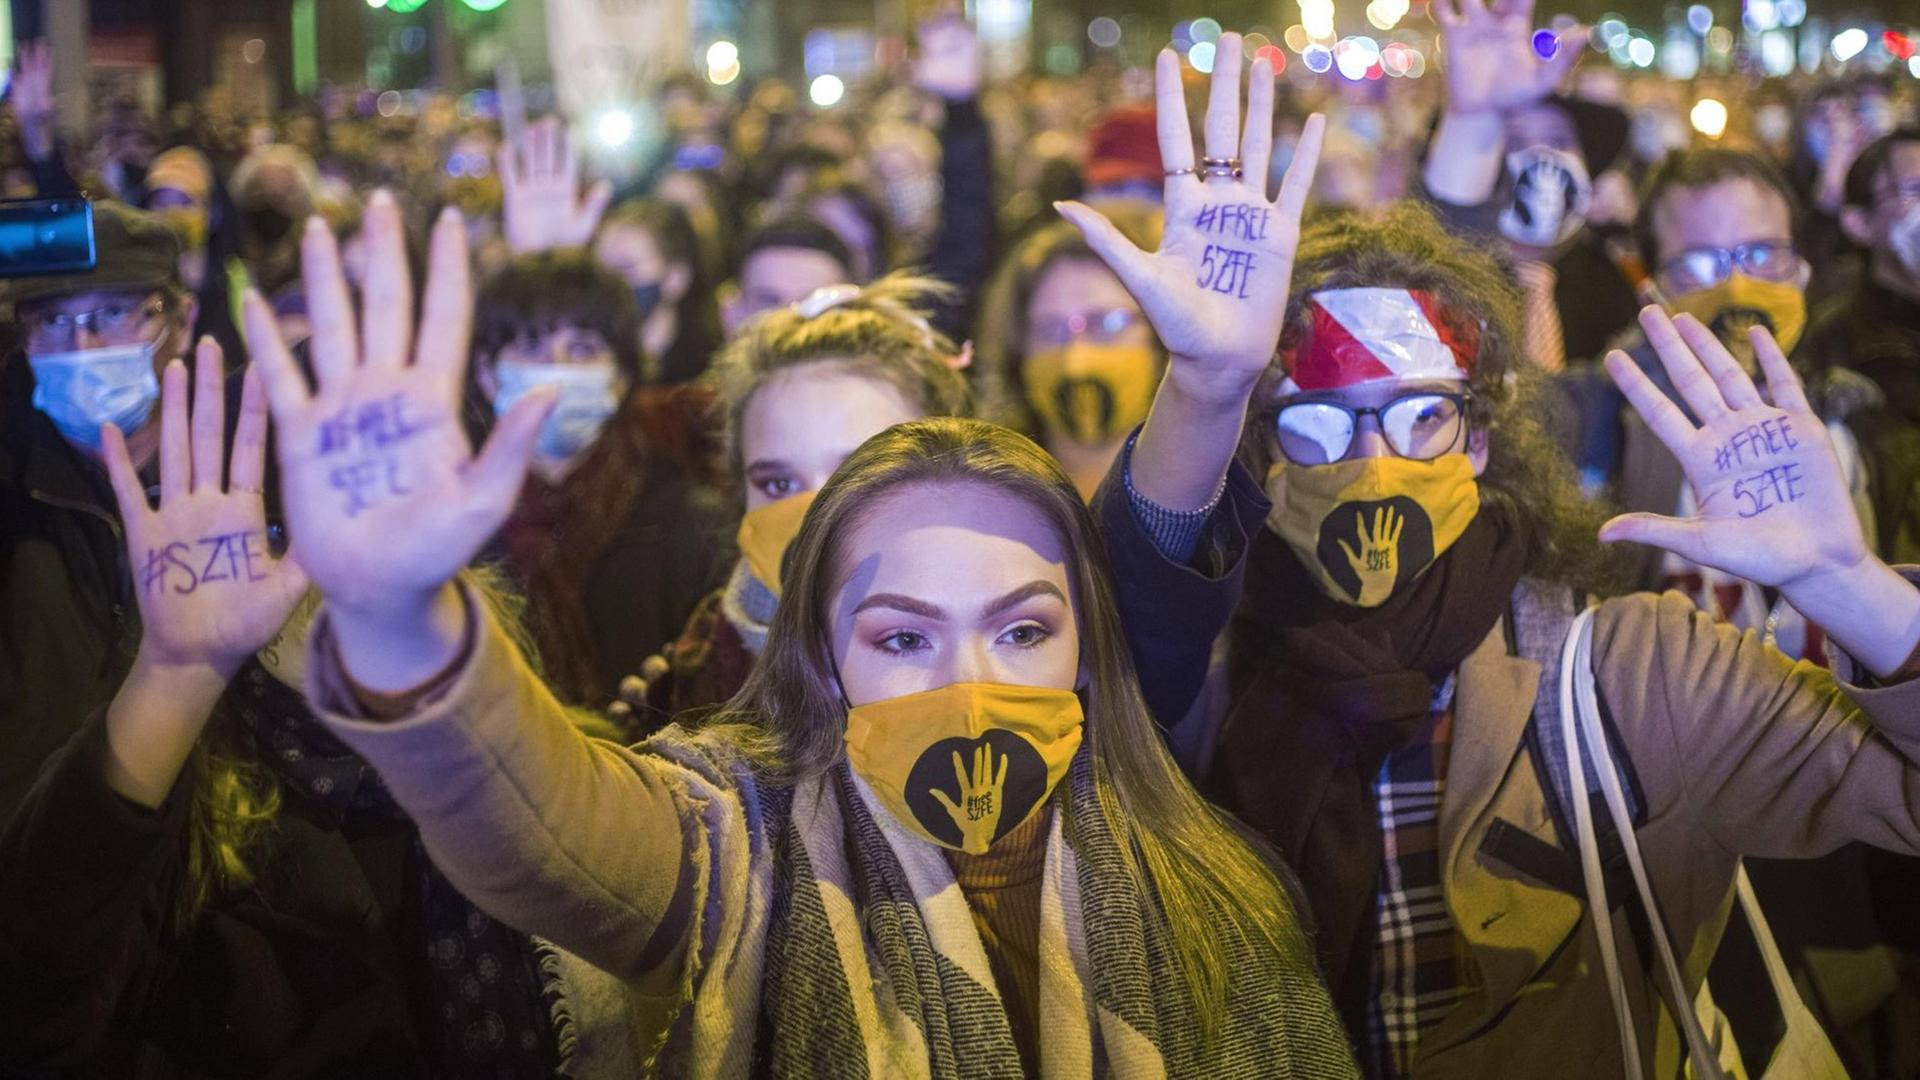 Demonstranten in Budapest protestieren gegen die Besetzung von Führungspositionen an der Hochschule für Film- und Theaterkunst durch Gefolgsleute des Ministerpräsidenten Orbán. Teilnehmer der Demo zeigen das Logo Free SZFE der studentischen Initiative zur Wiedergewinnung der Hochschulautonomie.